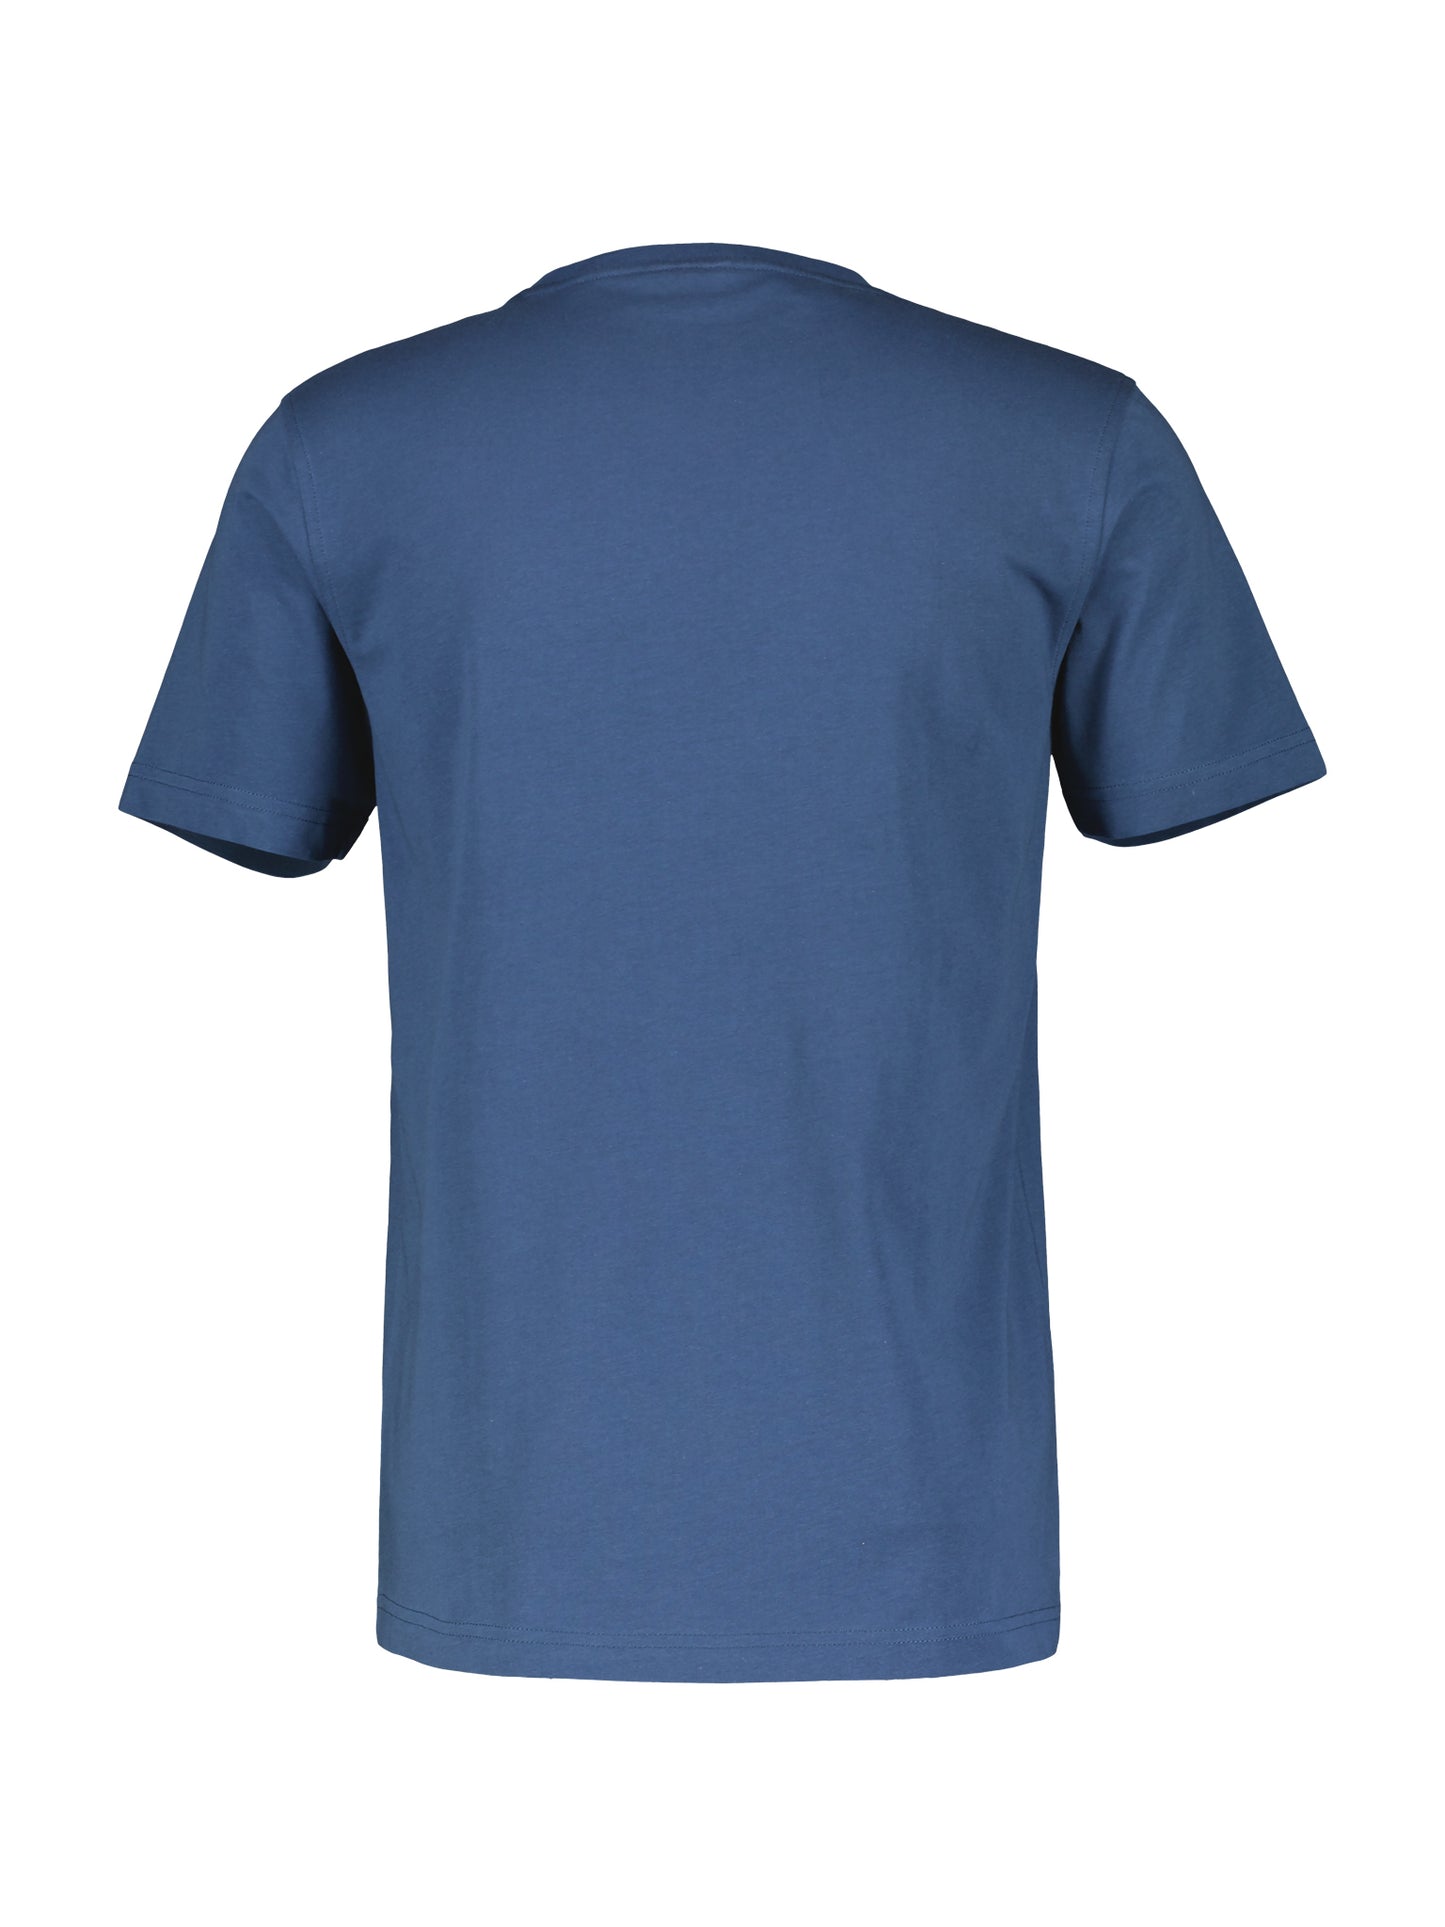 Storm Blue Basic Cotton T-Shirt